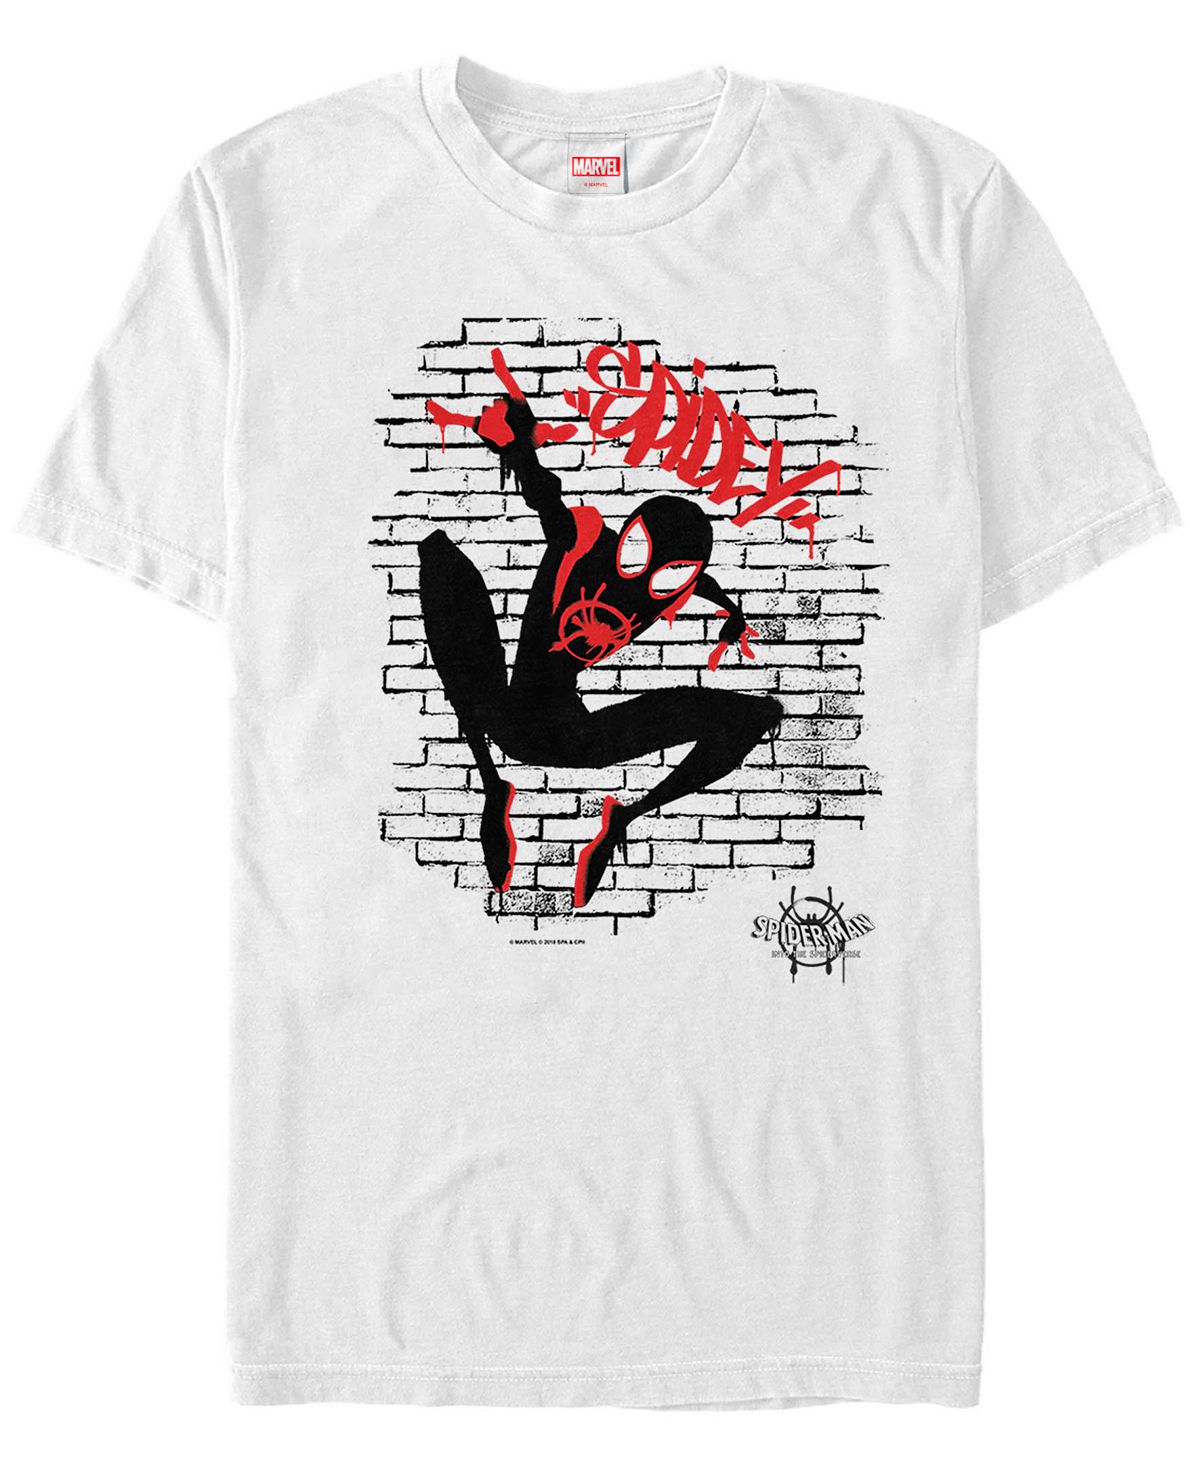 Мужская футболка с коротким рукавом с надписью «человек-паук» и «человек-паук» Fifth Sun, белый